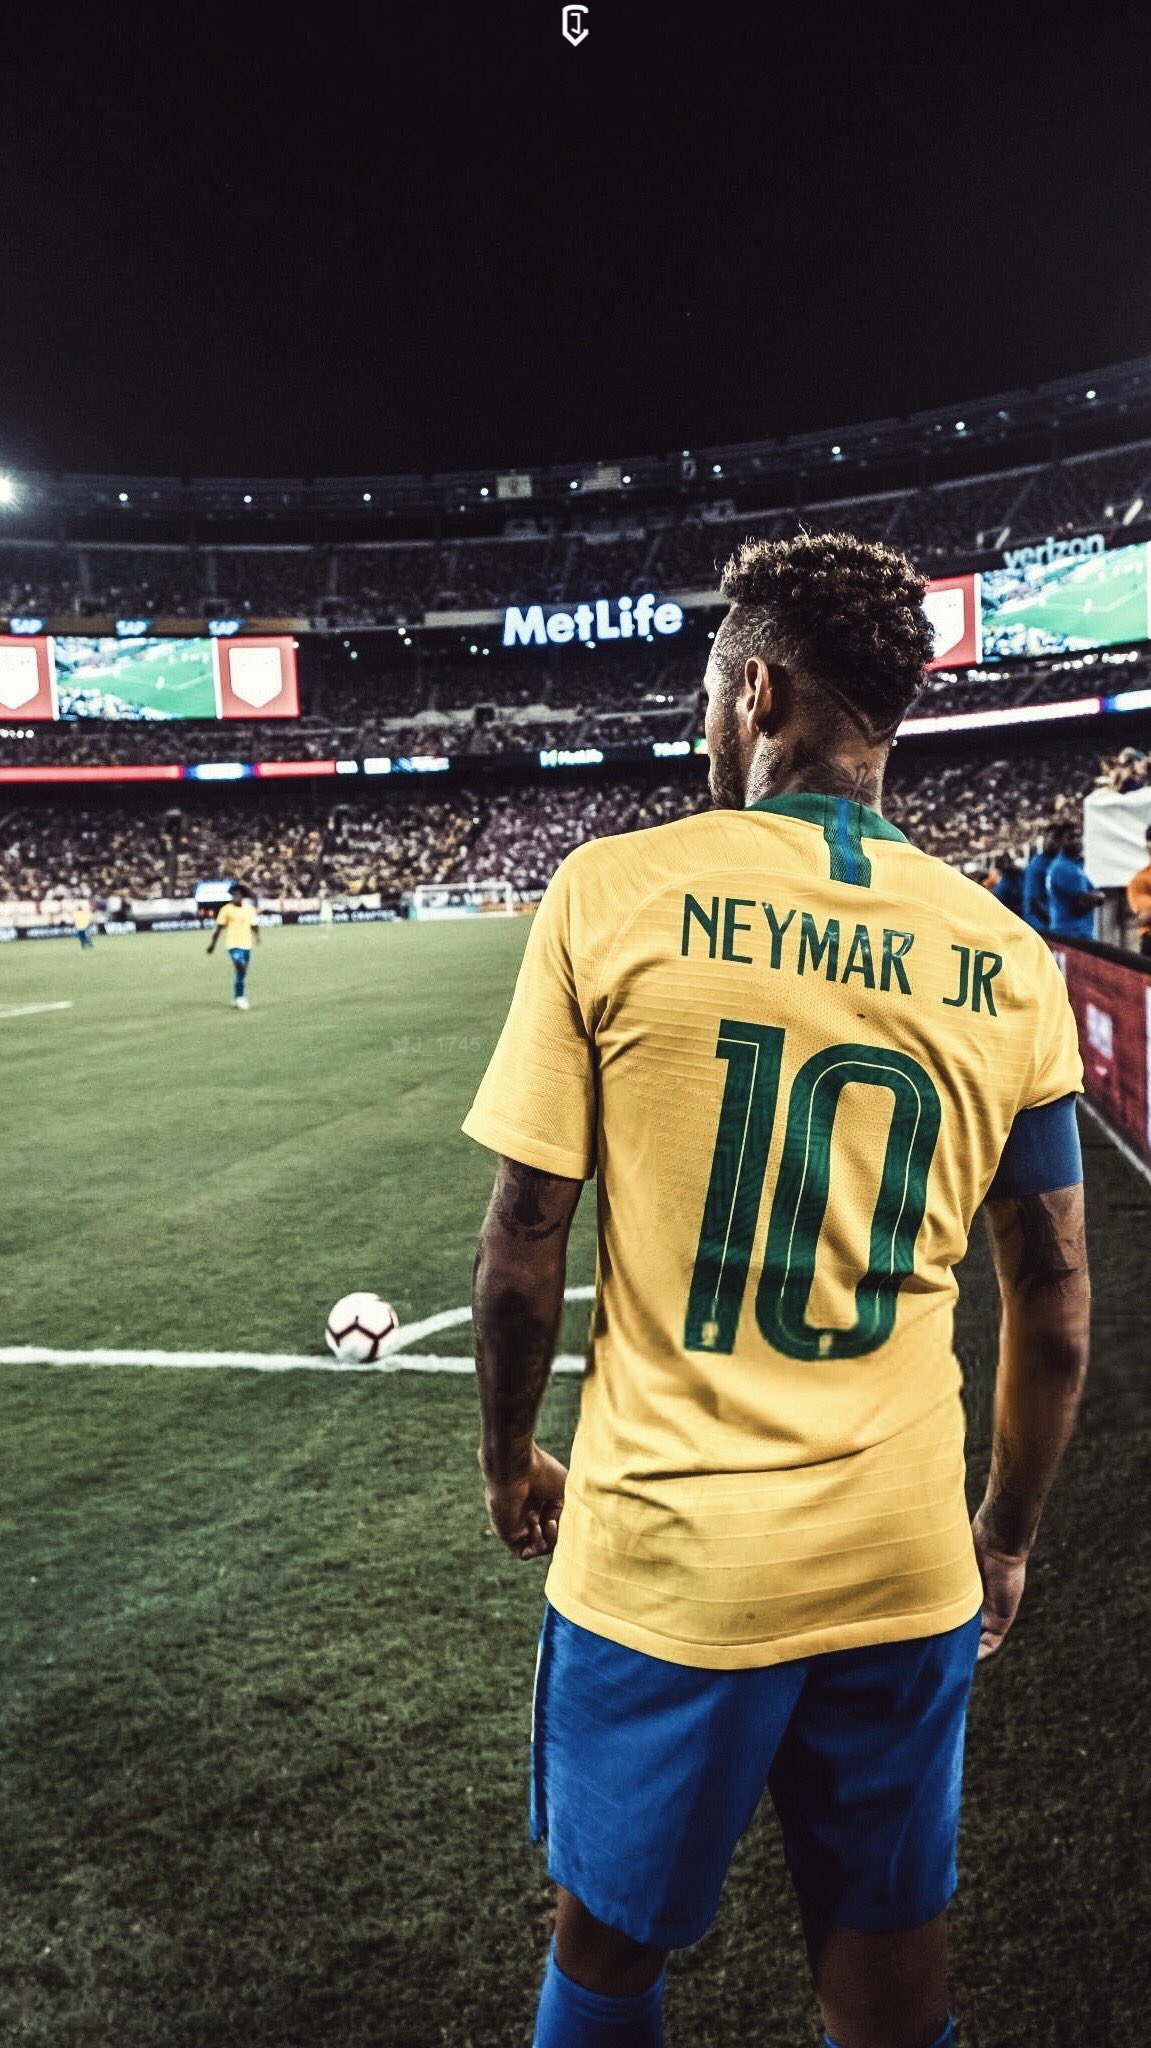 JDesign on Twitter Brazil  Neymar Jr Wallpaper  httpstcoNaj2dpdeyt  Twitter